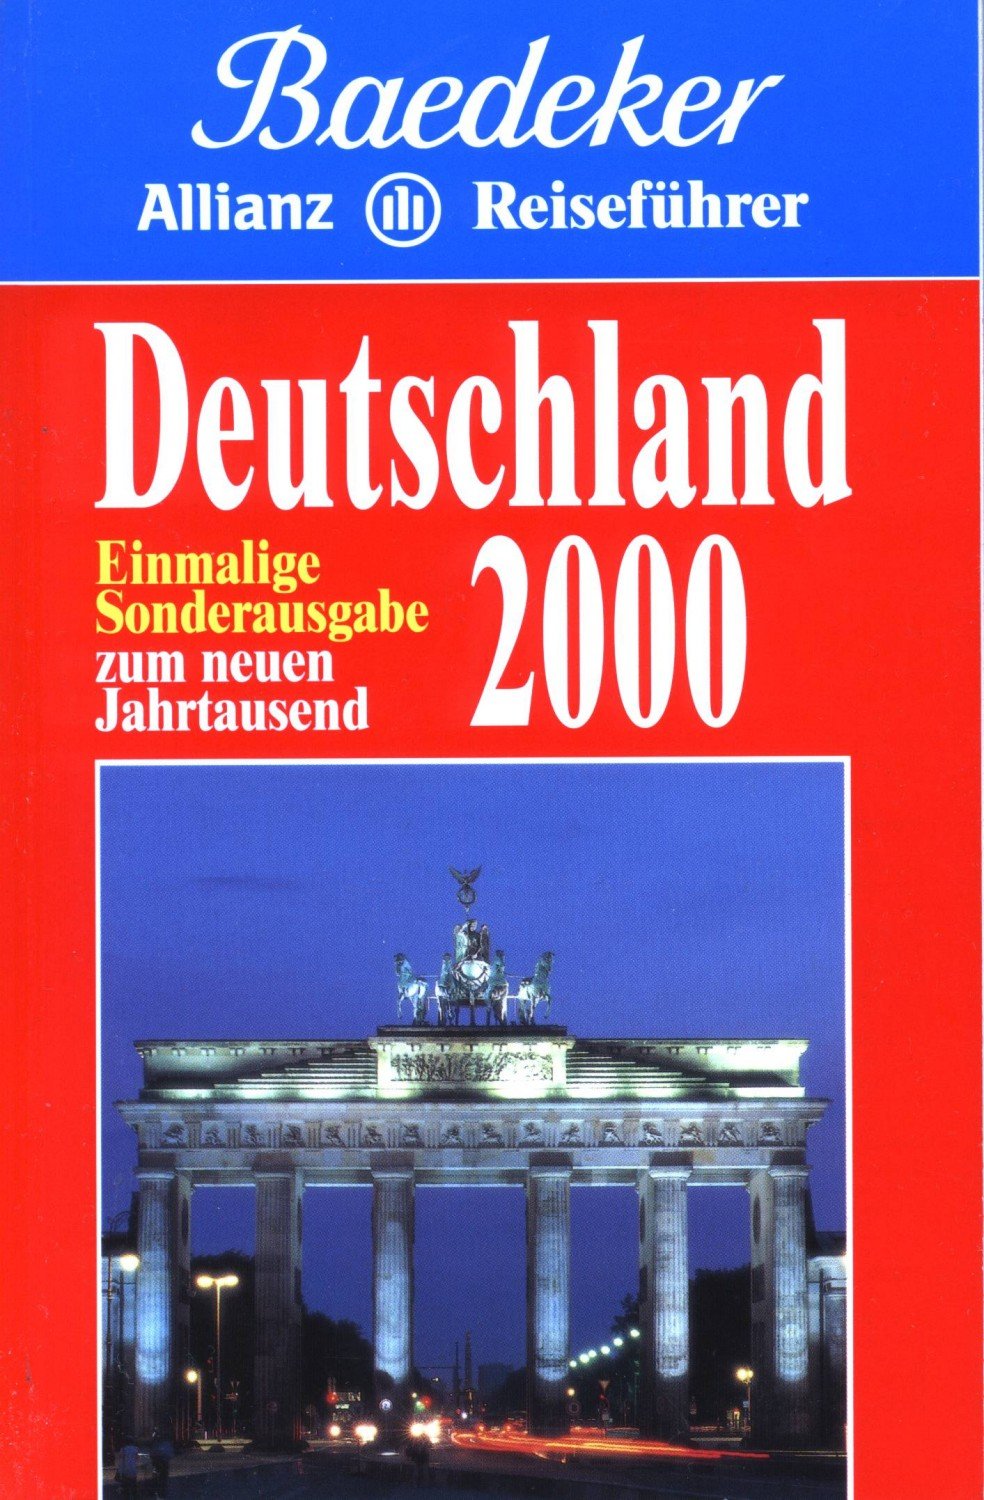 Baedeker Reiseführer Deutschland 2000 - 